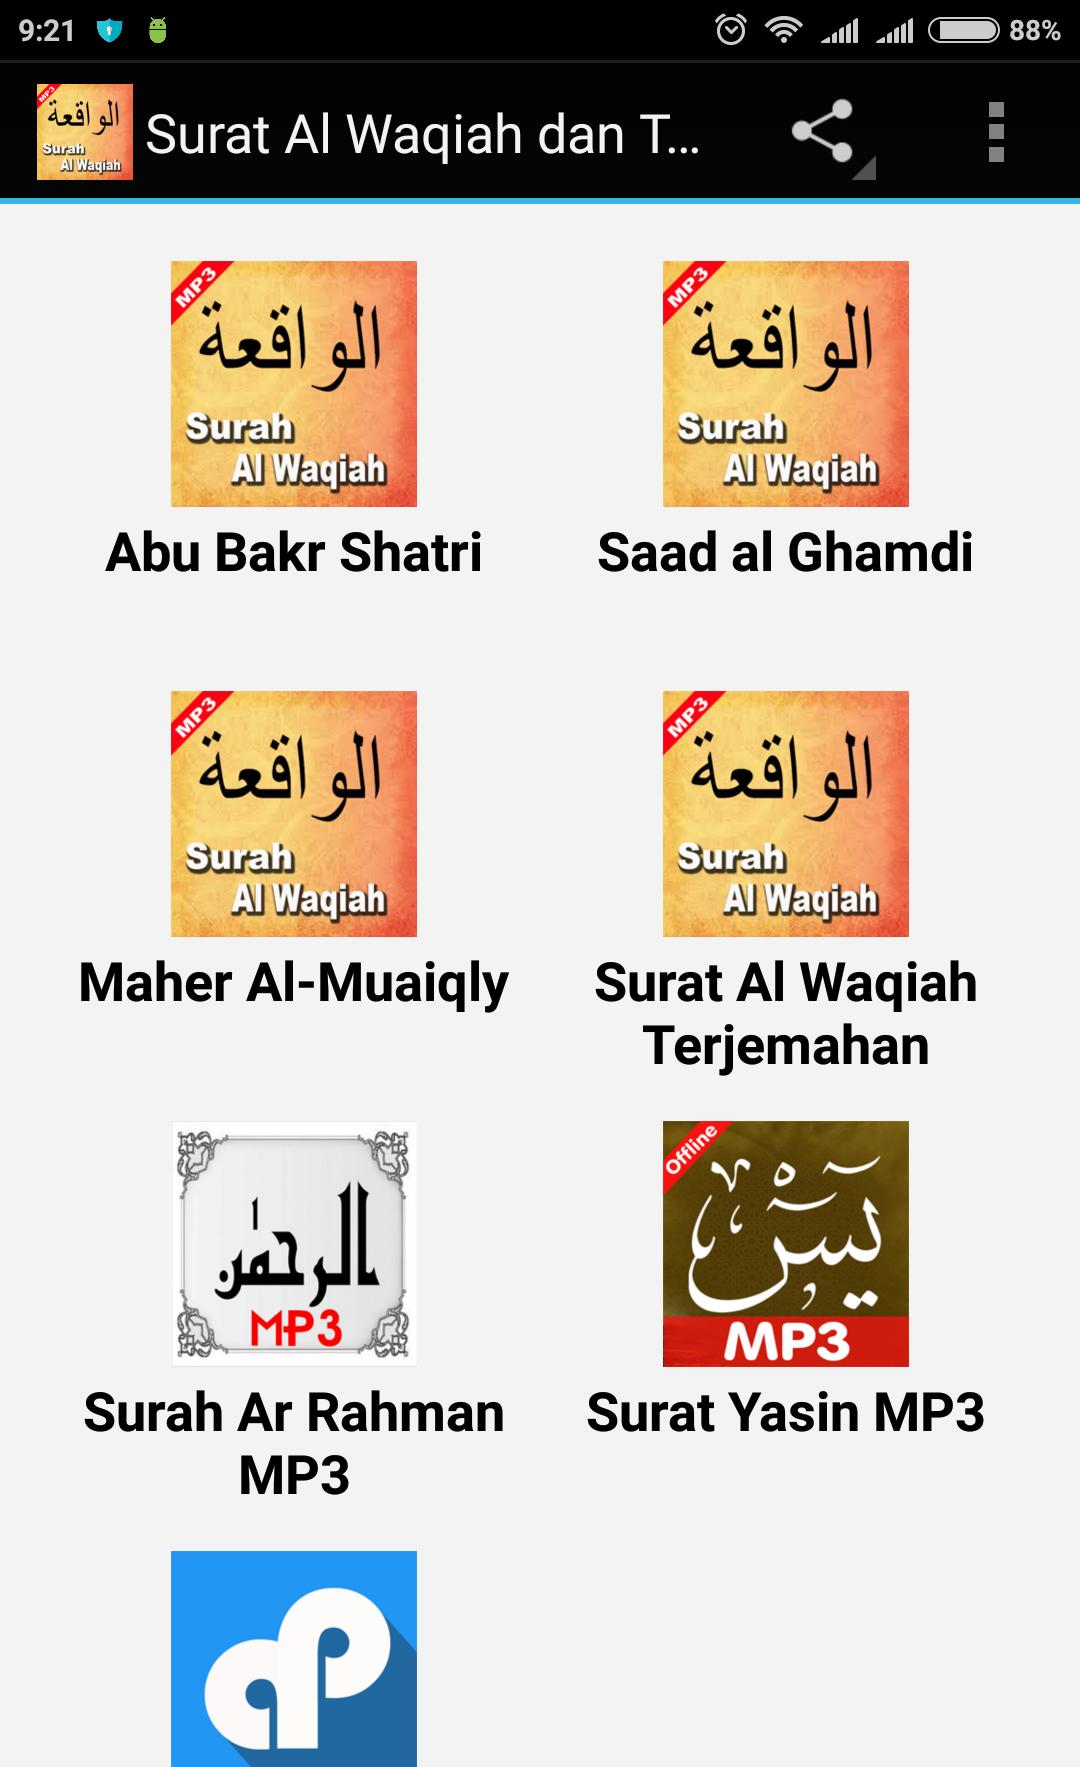 Surah Al-Waqiah dan Terjemahan for Android - APK Download